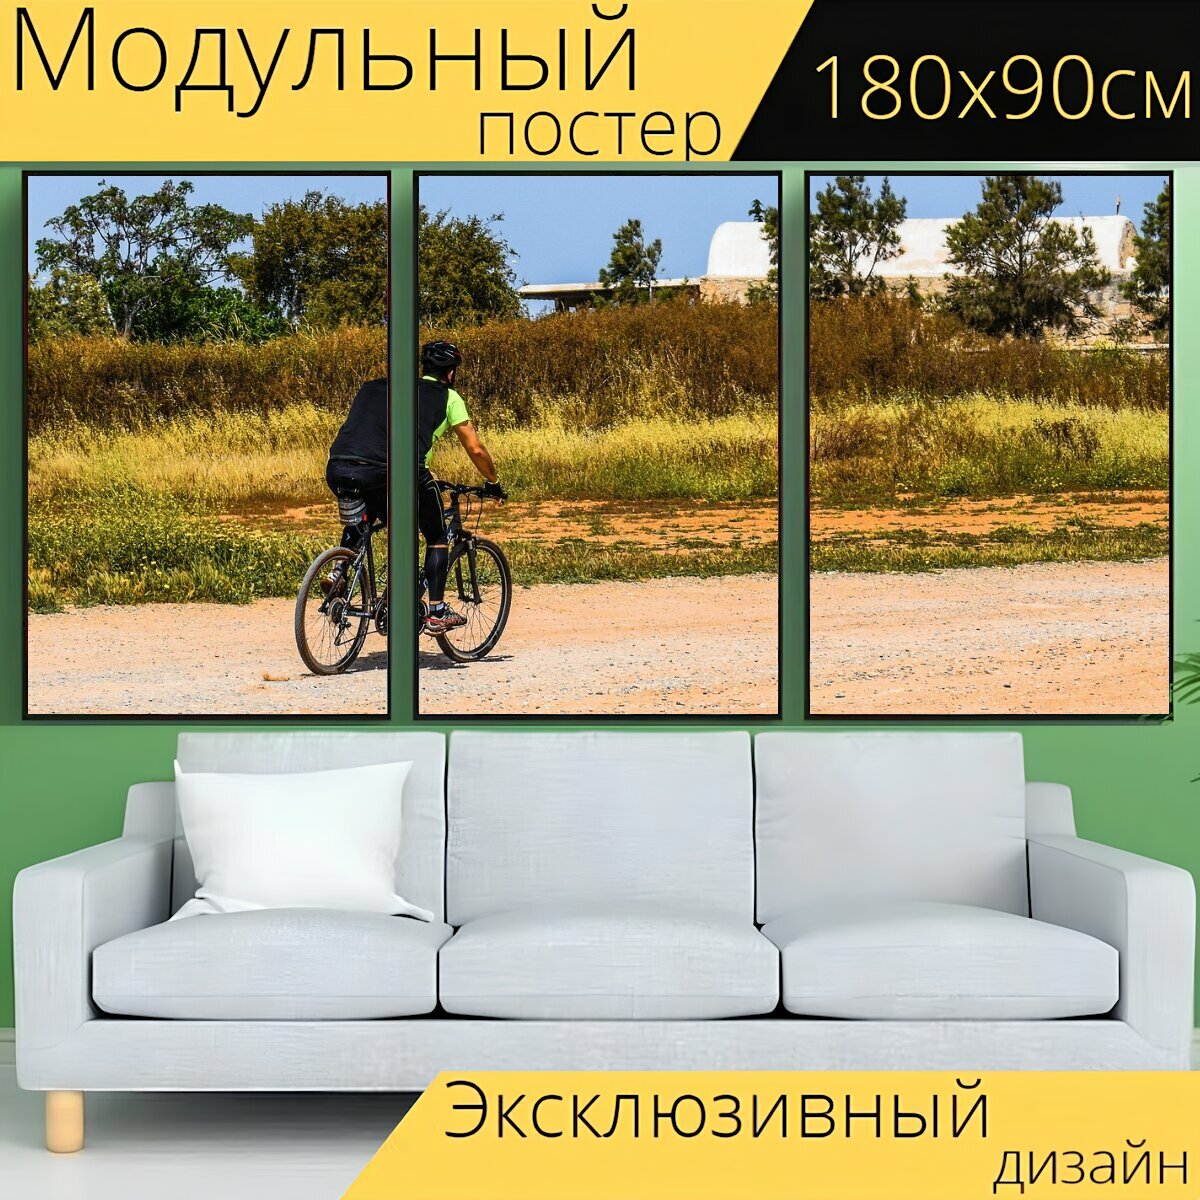 Модульный постер "Байкер, велосипед, езда на велосипеде" 180 x 90 см. для интерьера